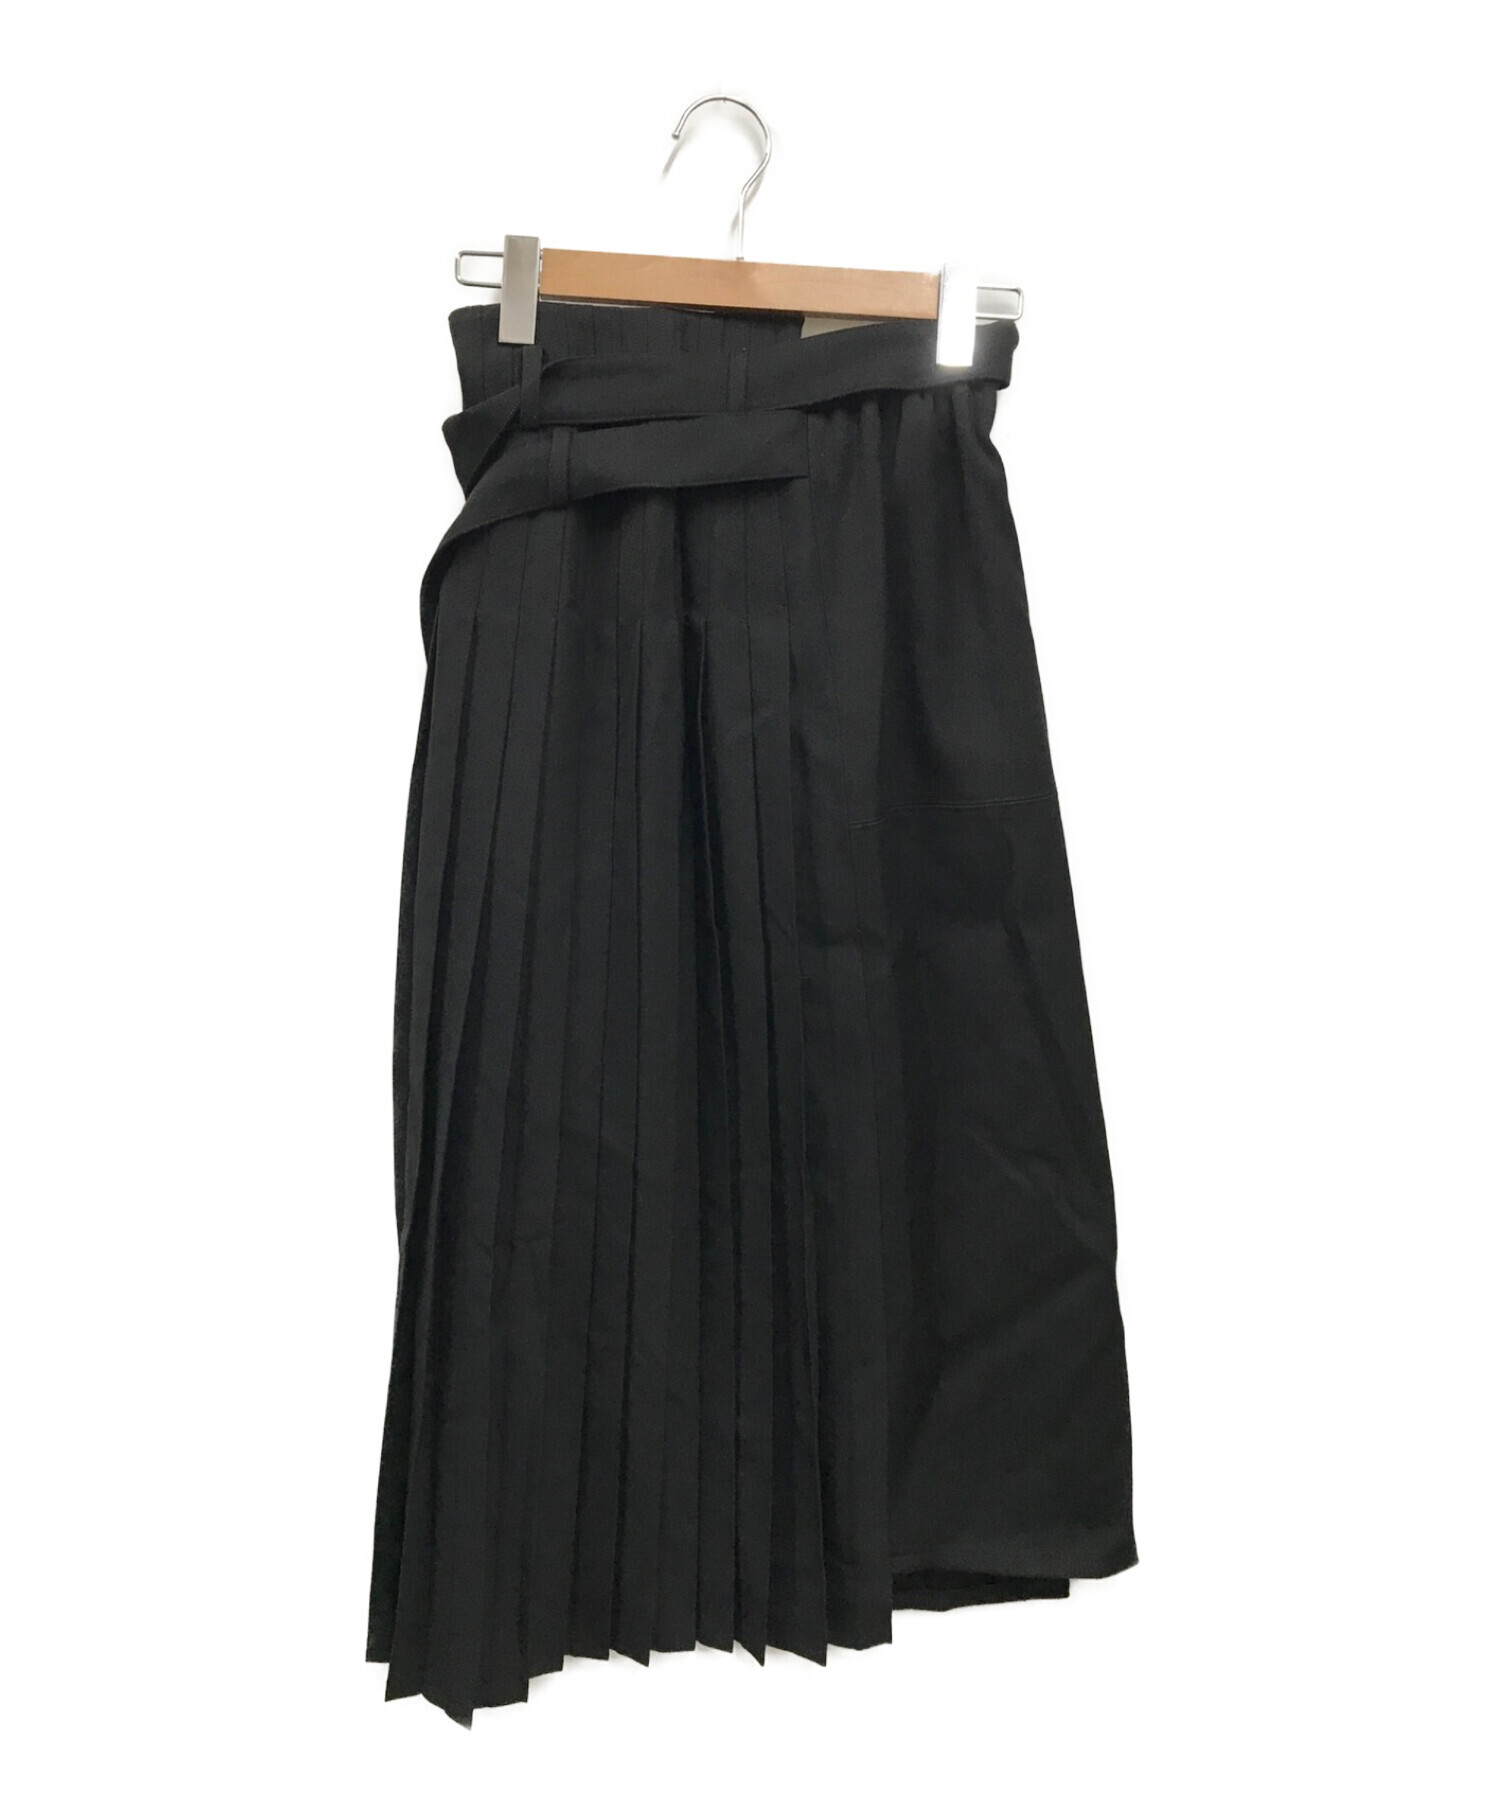 UNITED TOKYO (ユナイテッドトーキョー) ハーフプリーツスカート/142144002 ブラック サイズ:1